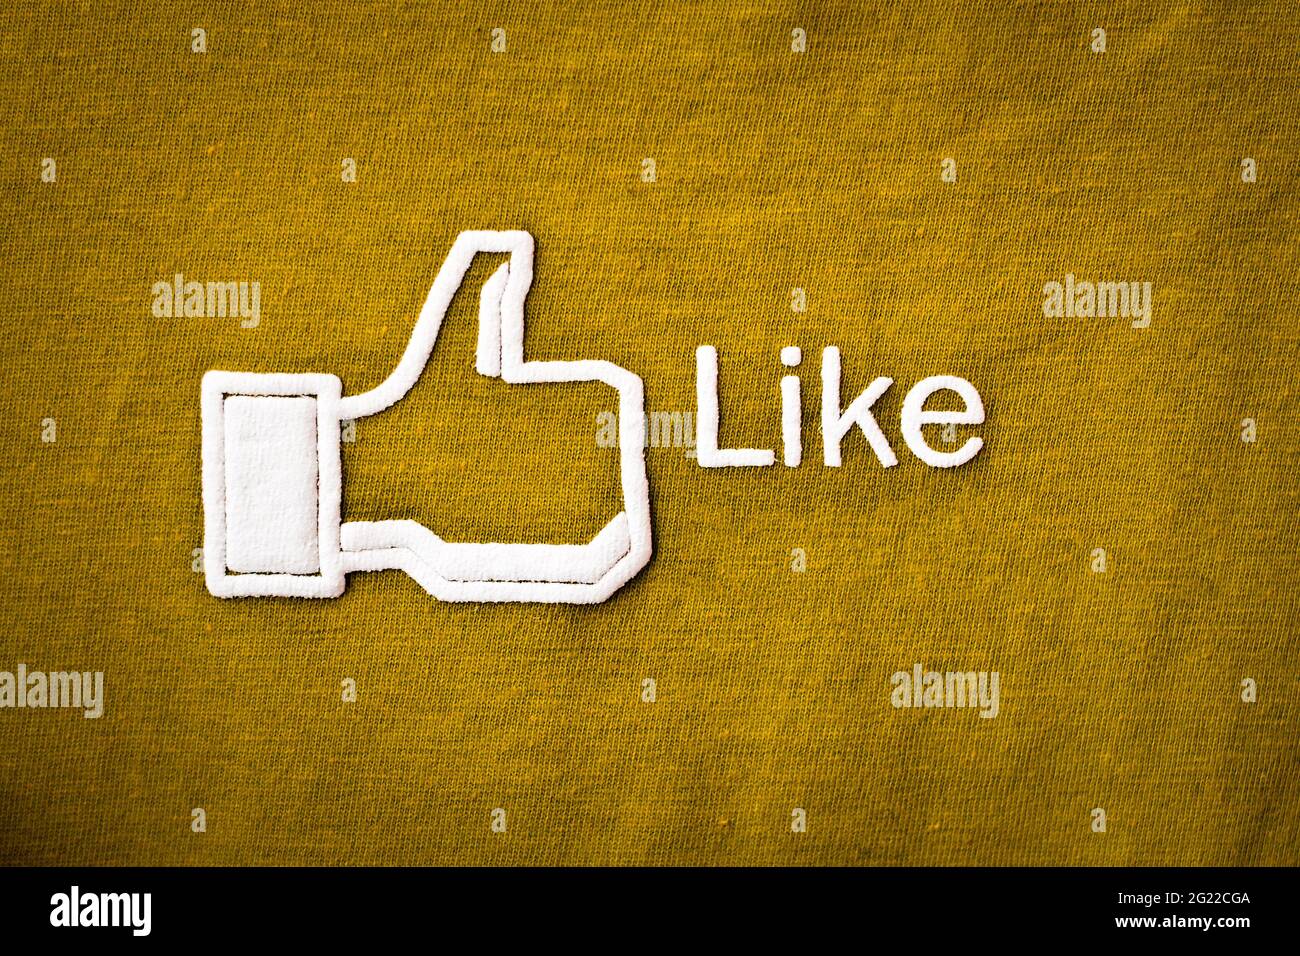 Amphawa, Thailandia - 29 dicembre 2012: Facebook icona simile su tessuto, Facebook è il più grande sito di social networking del mondo. Foto Stock